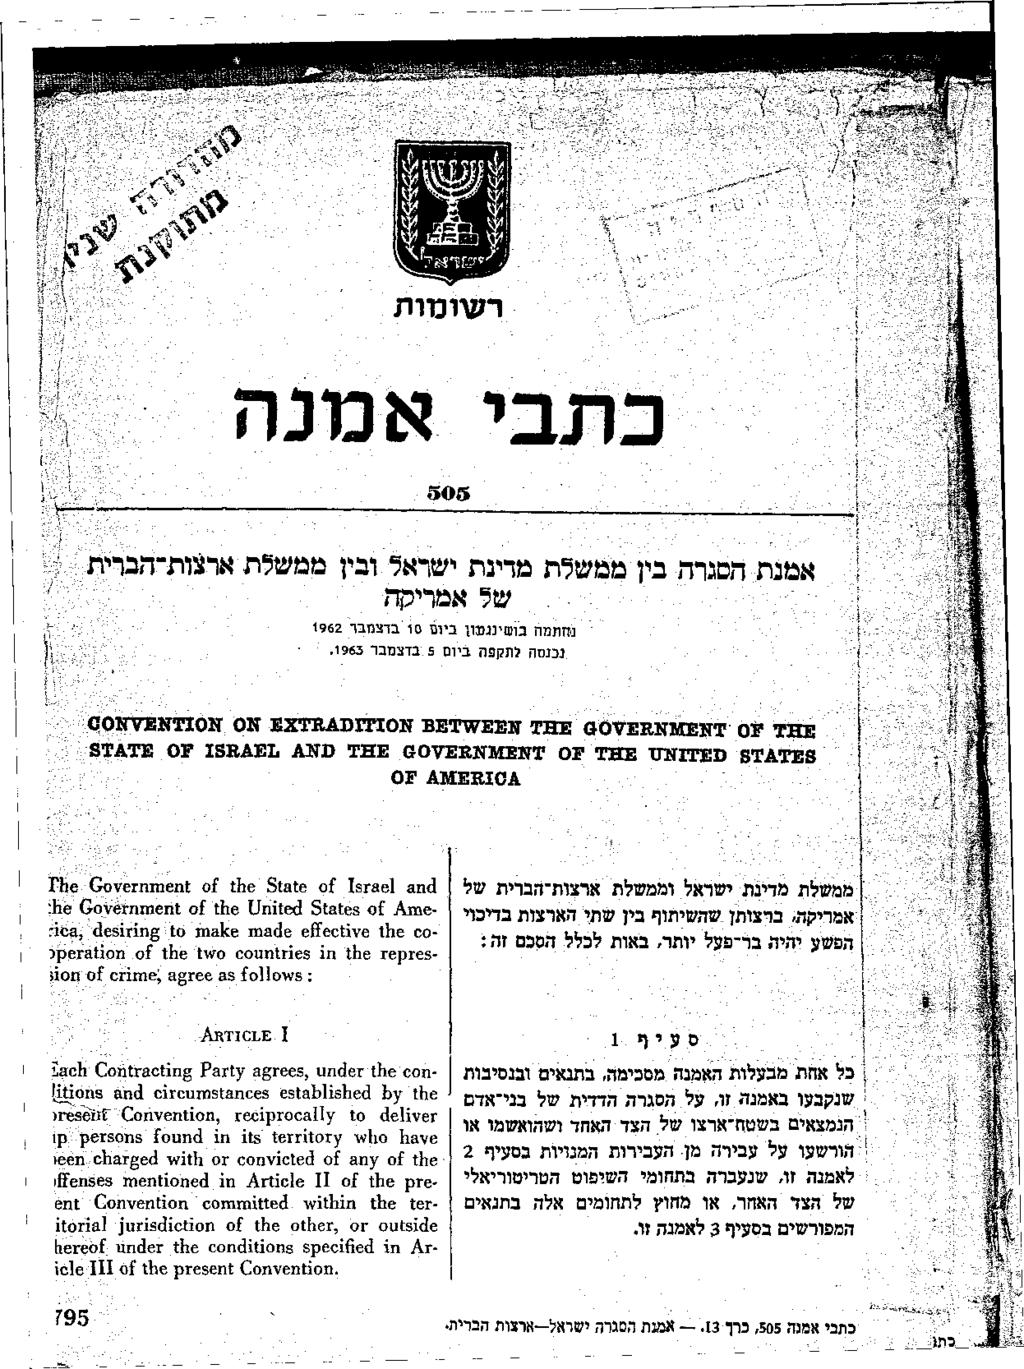 רעמטות כתבי אמנה 505 אמנת הסגרה בין ממשלת מדינת ישראל ובין ממשלת ארצורדהברית. של אמריקה נחתמה בושינגננון ביום 10 בדצמבר 1962 נכגסה לתקפה ביום 5 בדצמבר 1963.